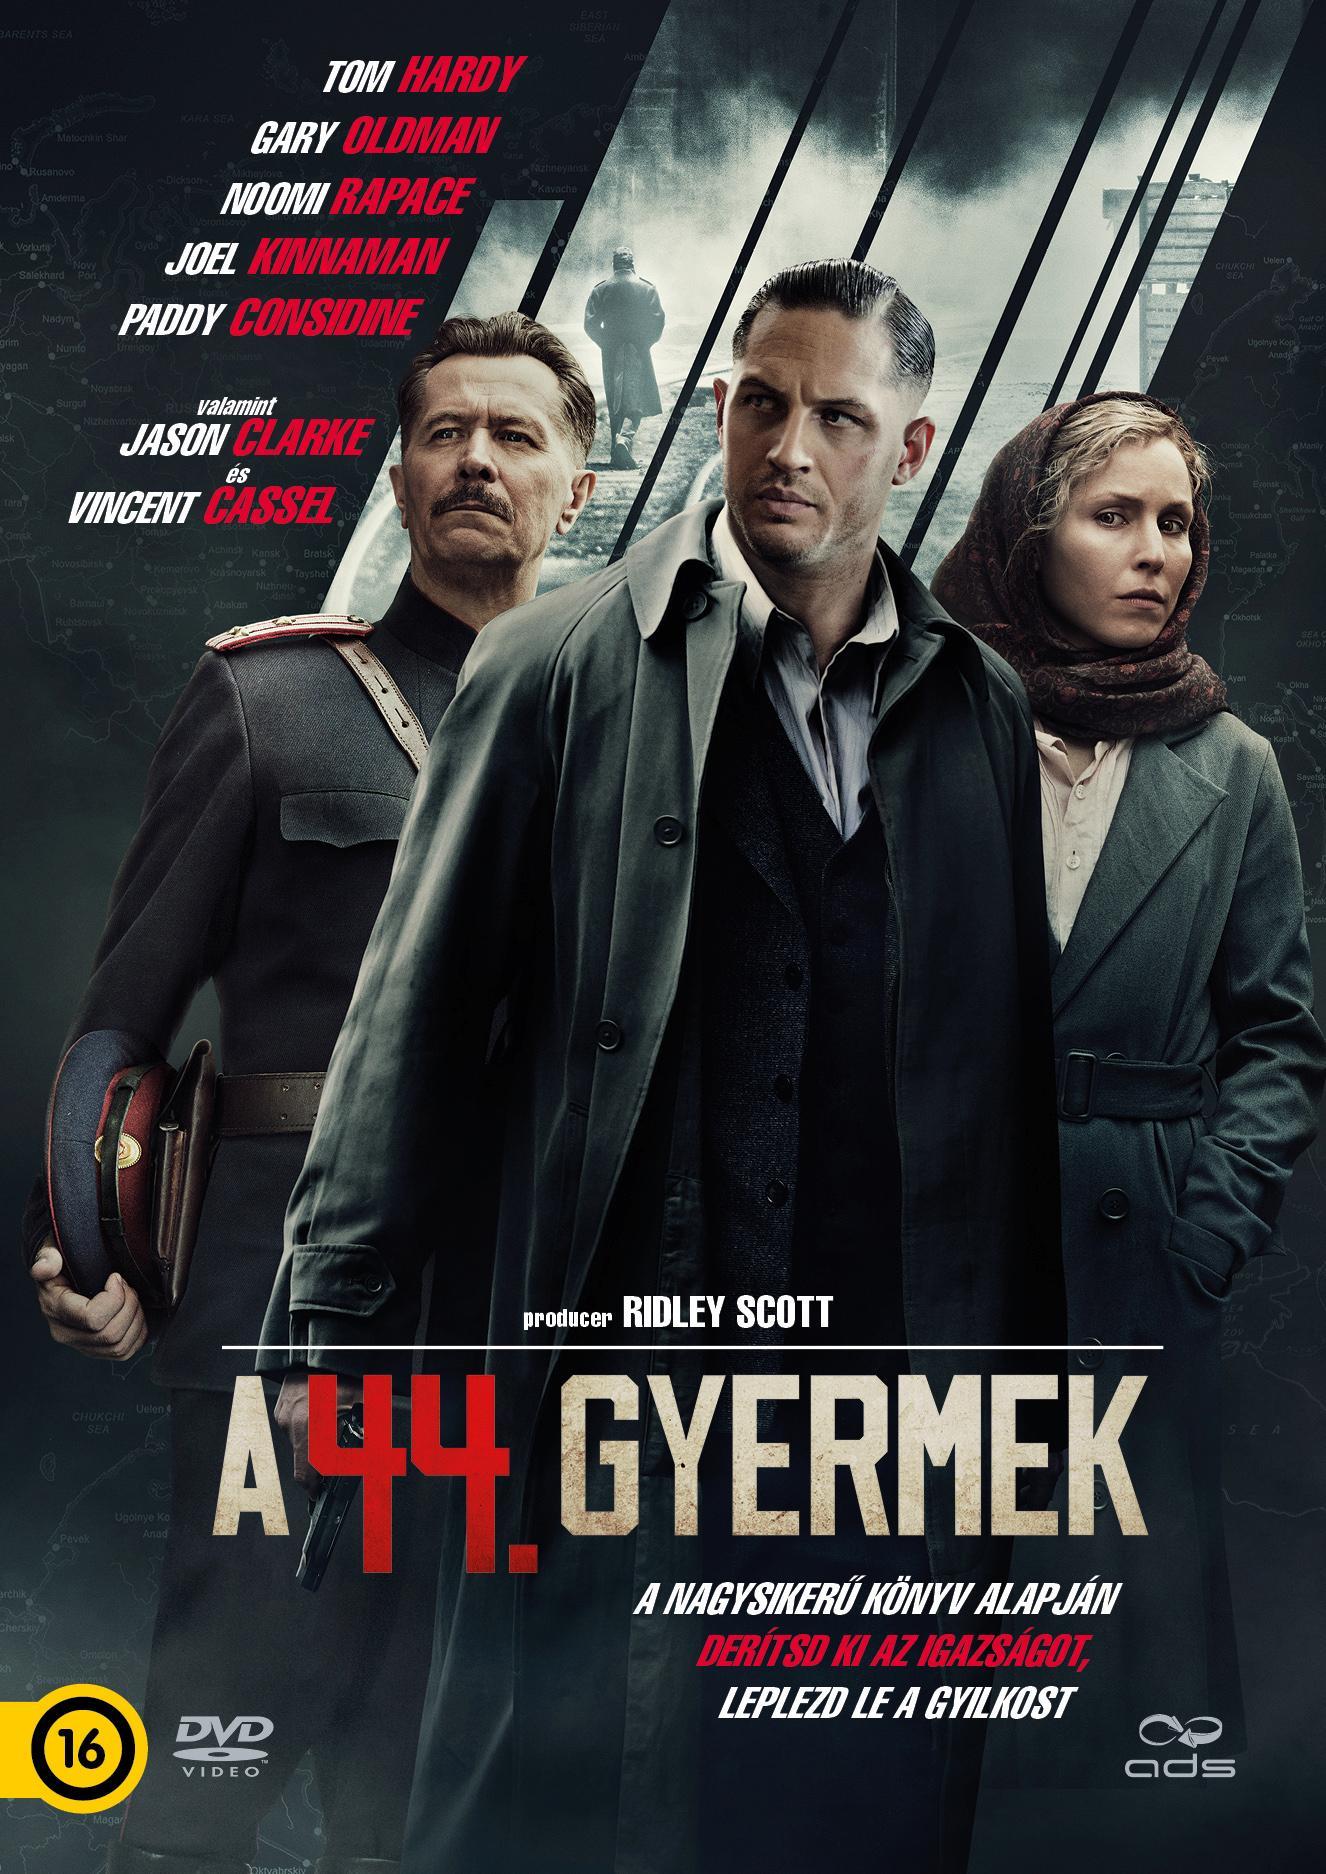 A 44. GYERMEK  - DVD -